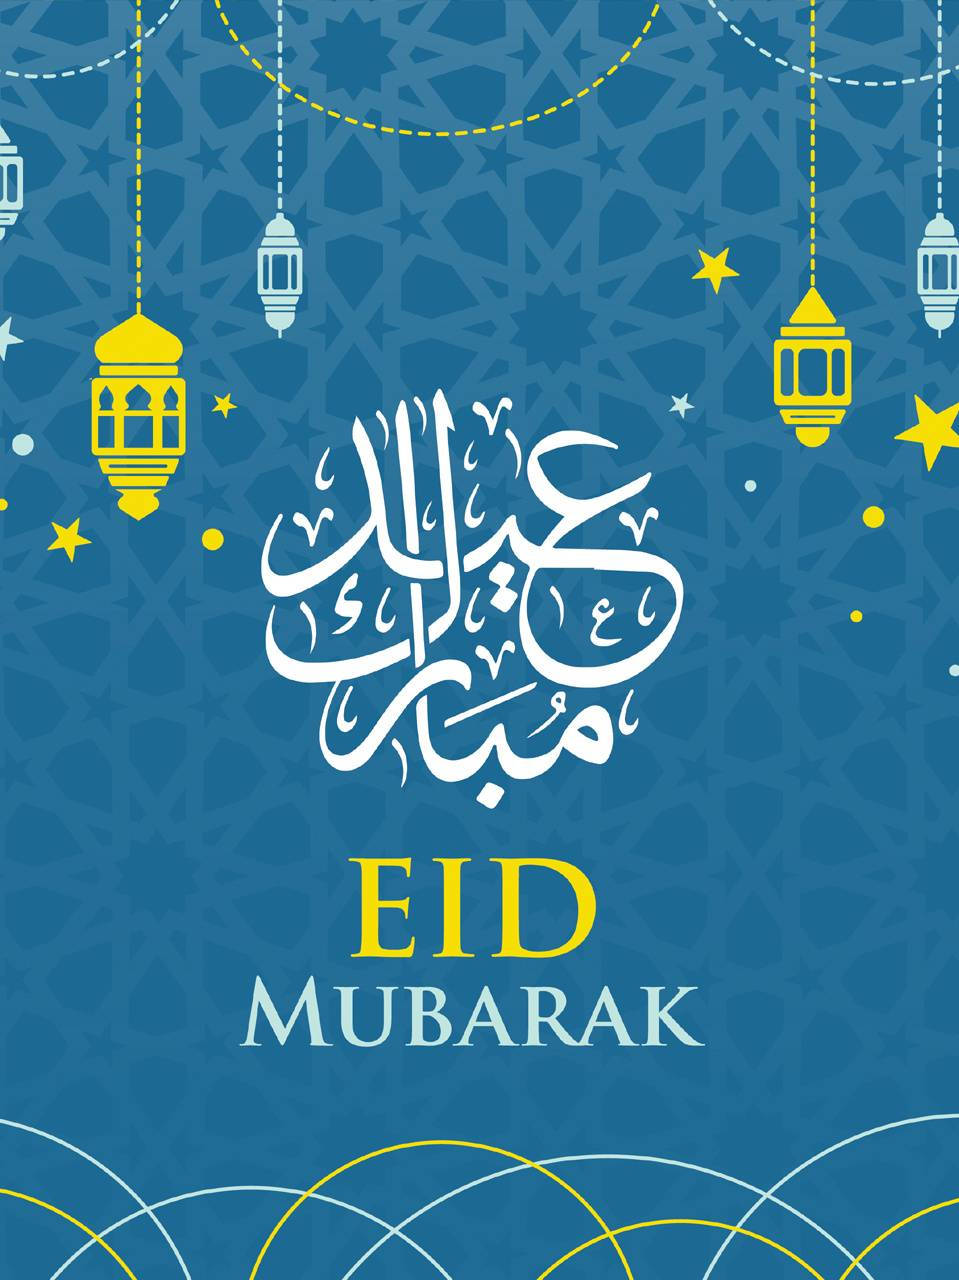 Caption: Celebrating The Spirit Of Eid Mubarak Background